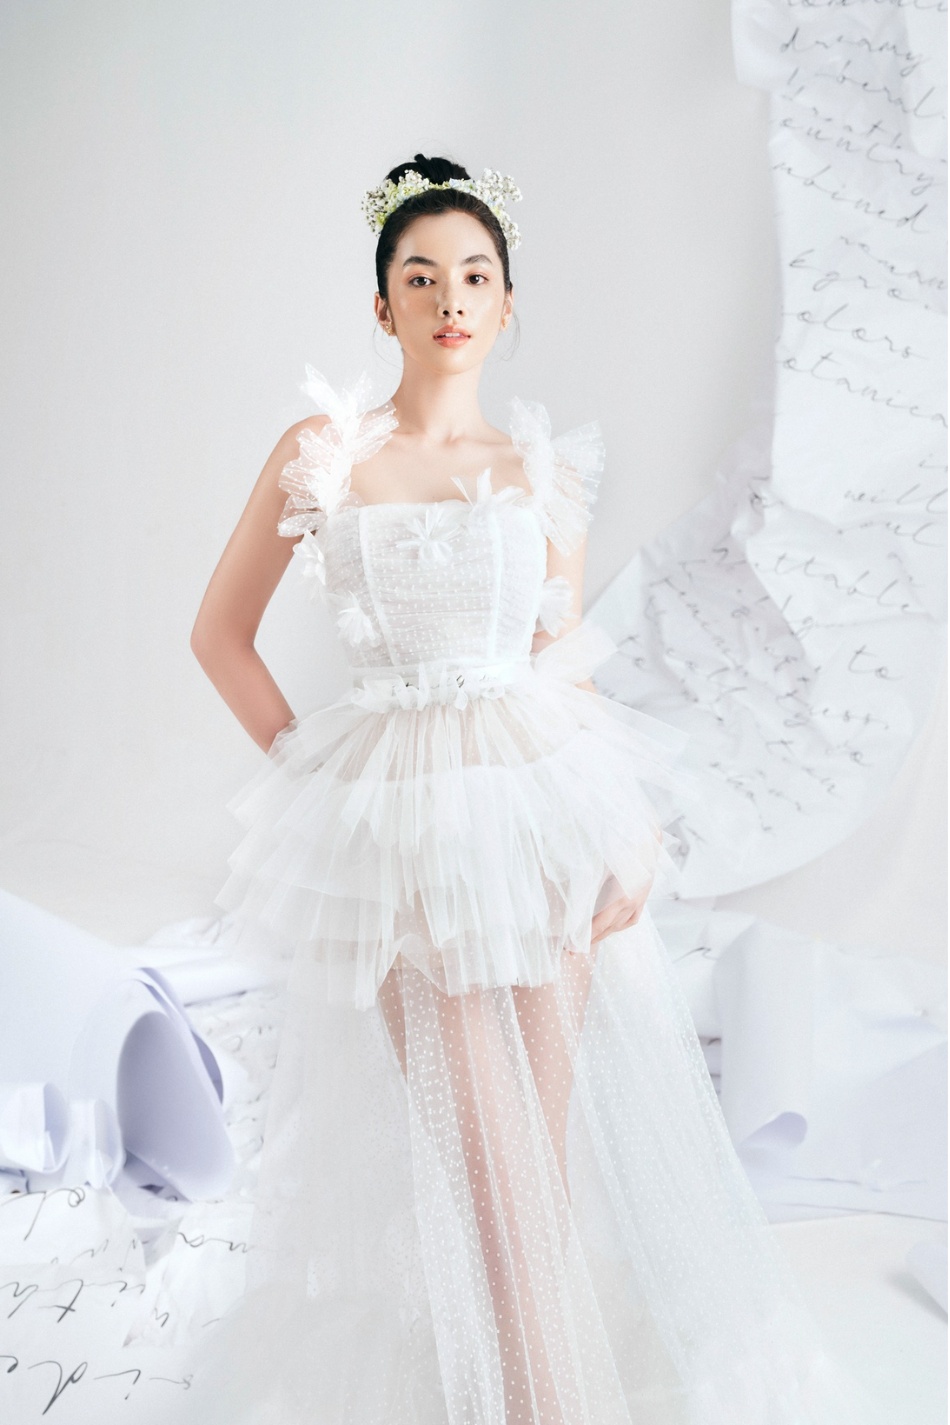 Hương Giang diện váy body cũng chặt đẹp công chúa Ngọc Trinh - 2sao